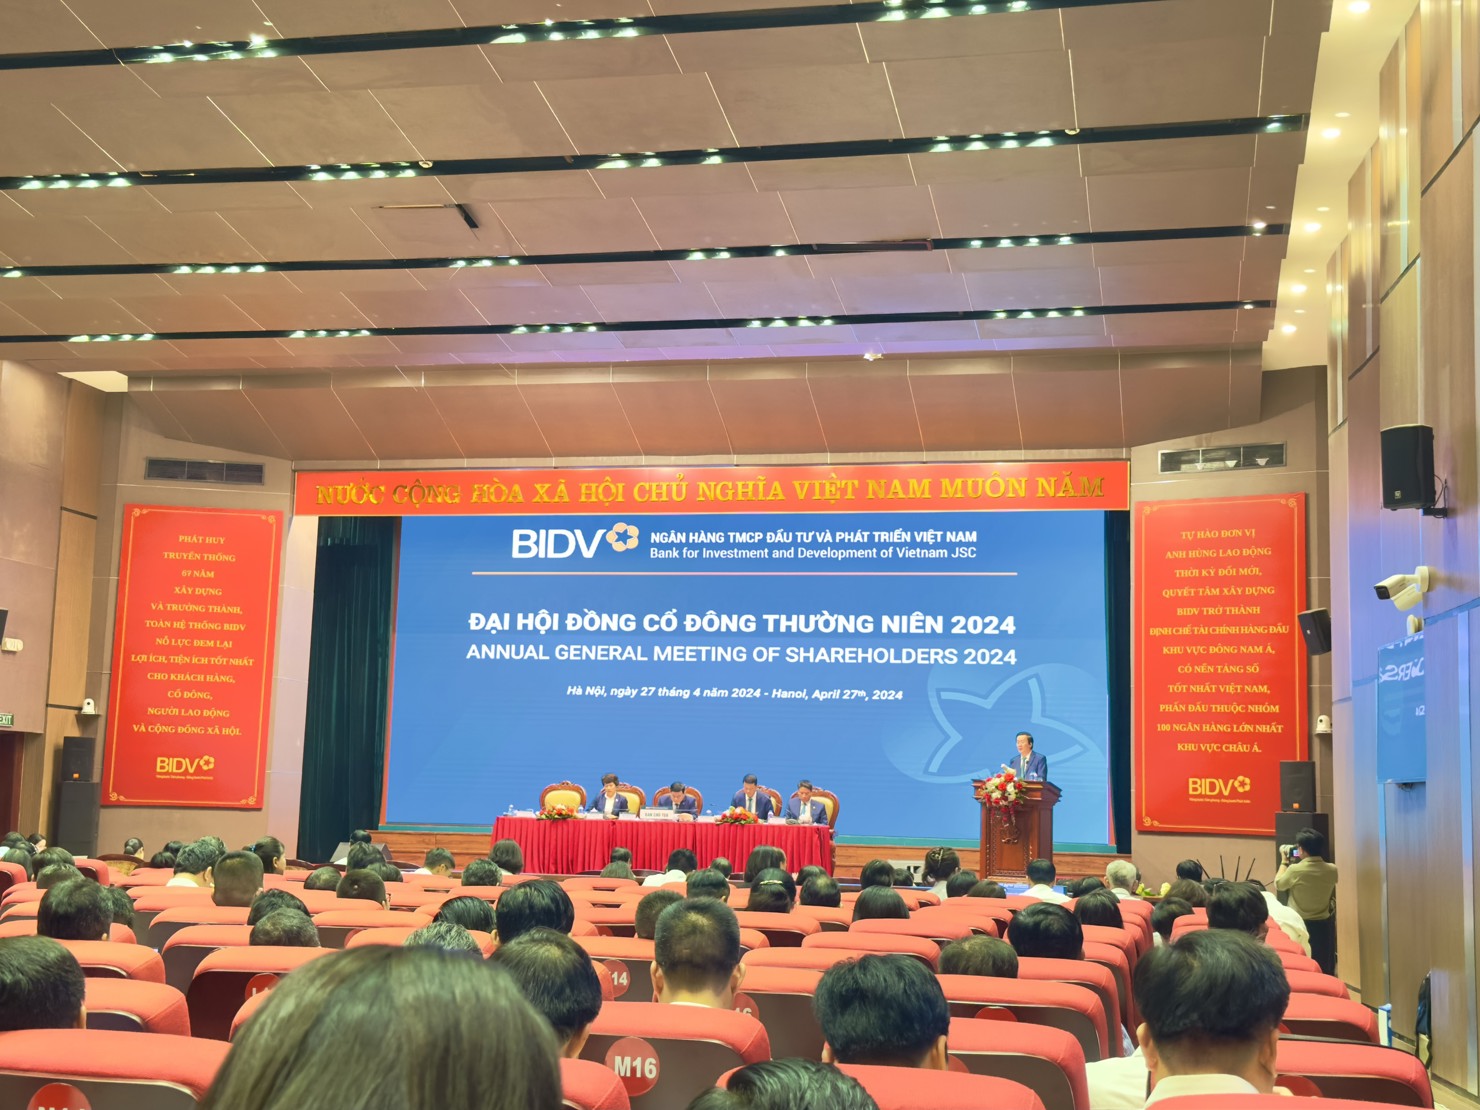 Đại hội đồng cổ đông thường niên 2024 BIDV.